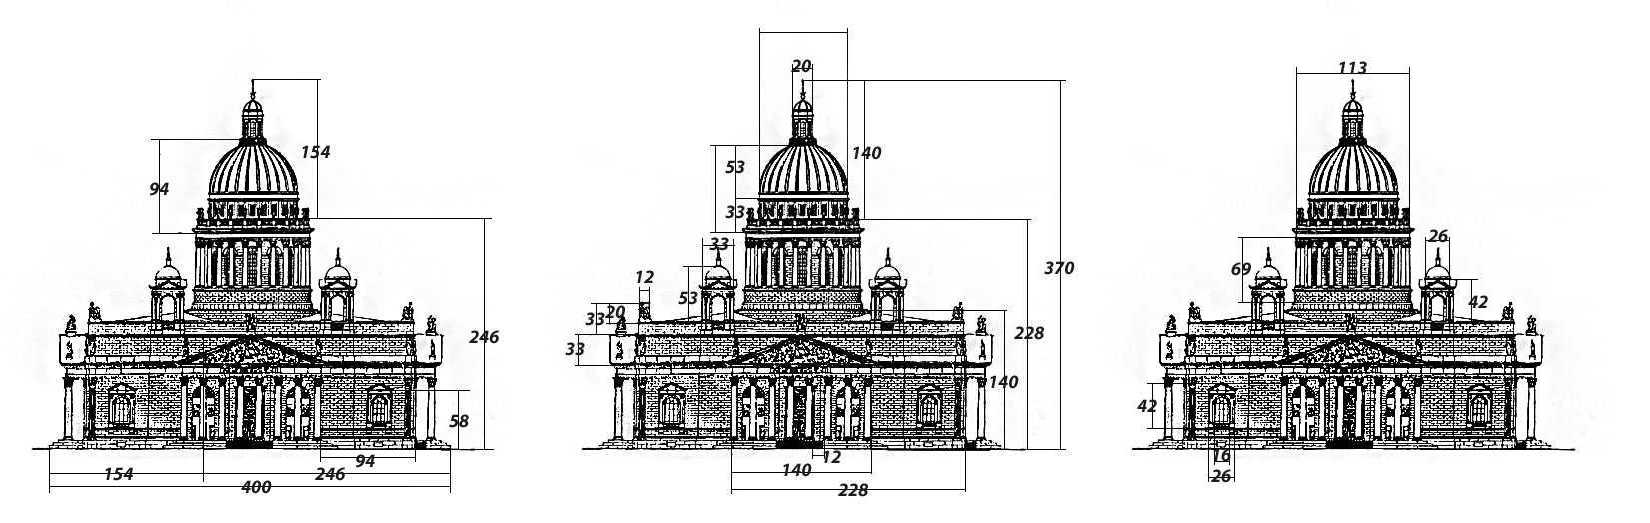 Пример золотого сечения в архитектуре Исаакиевского собора 